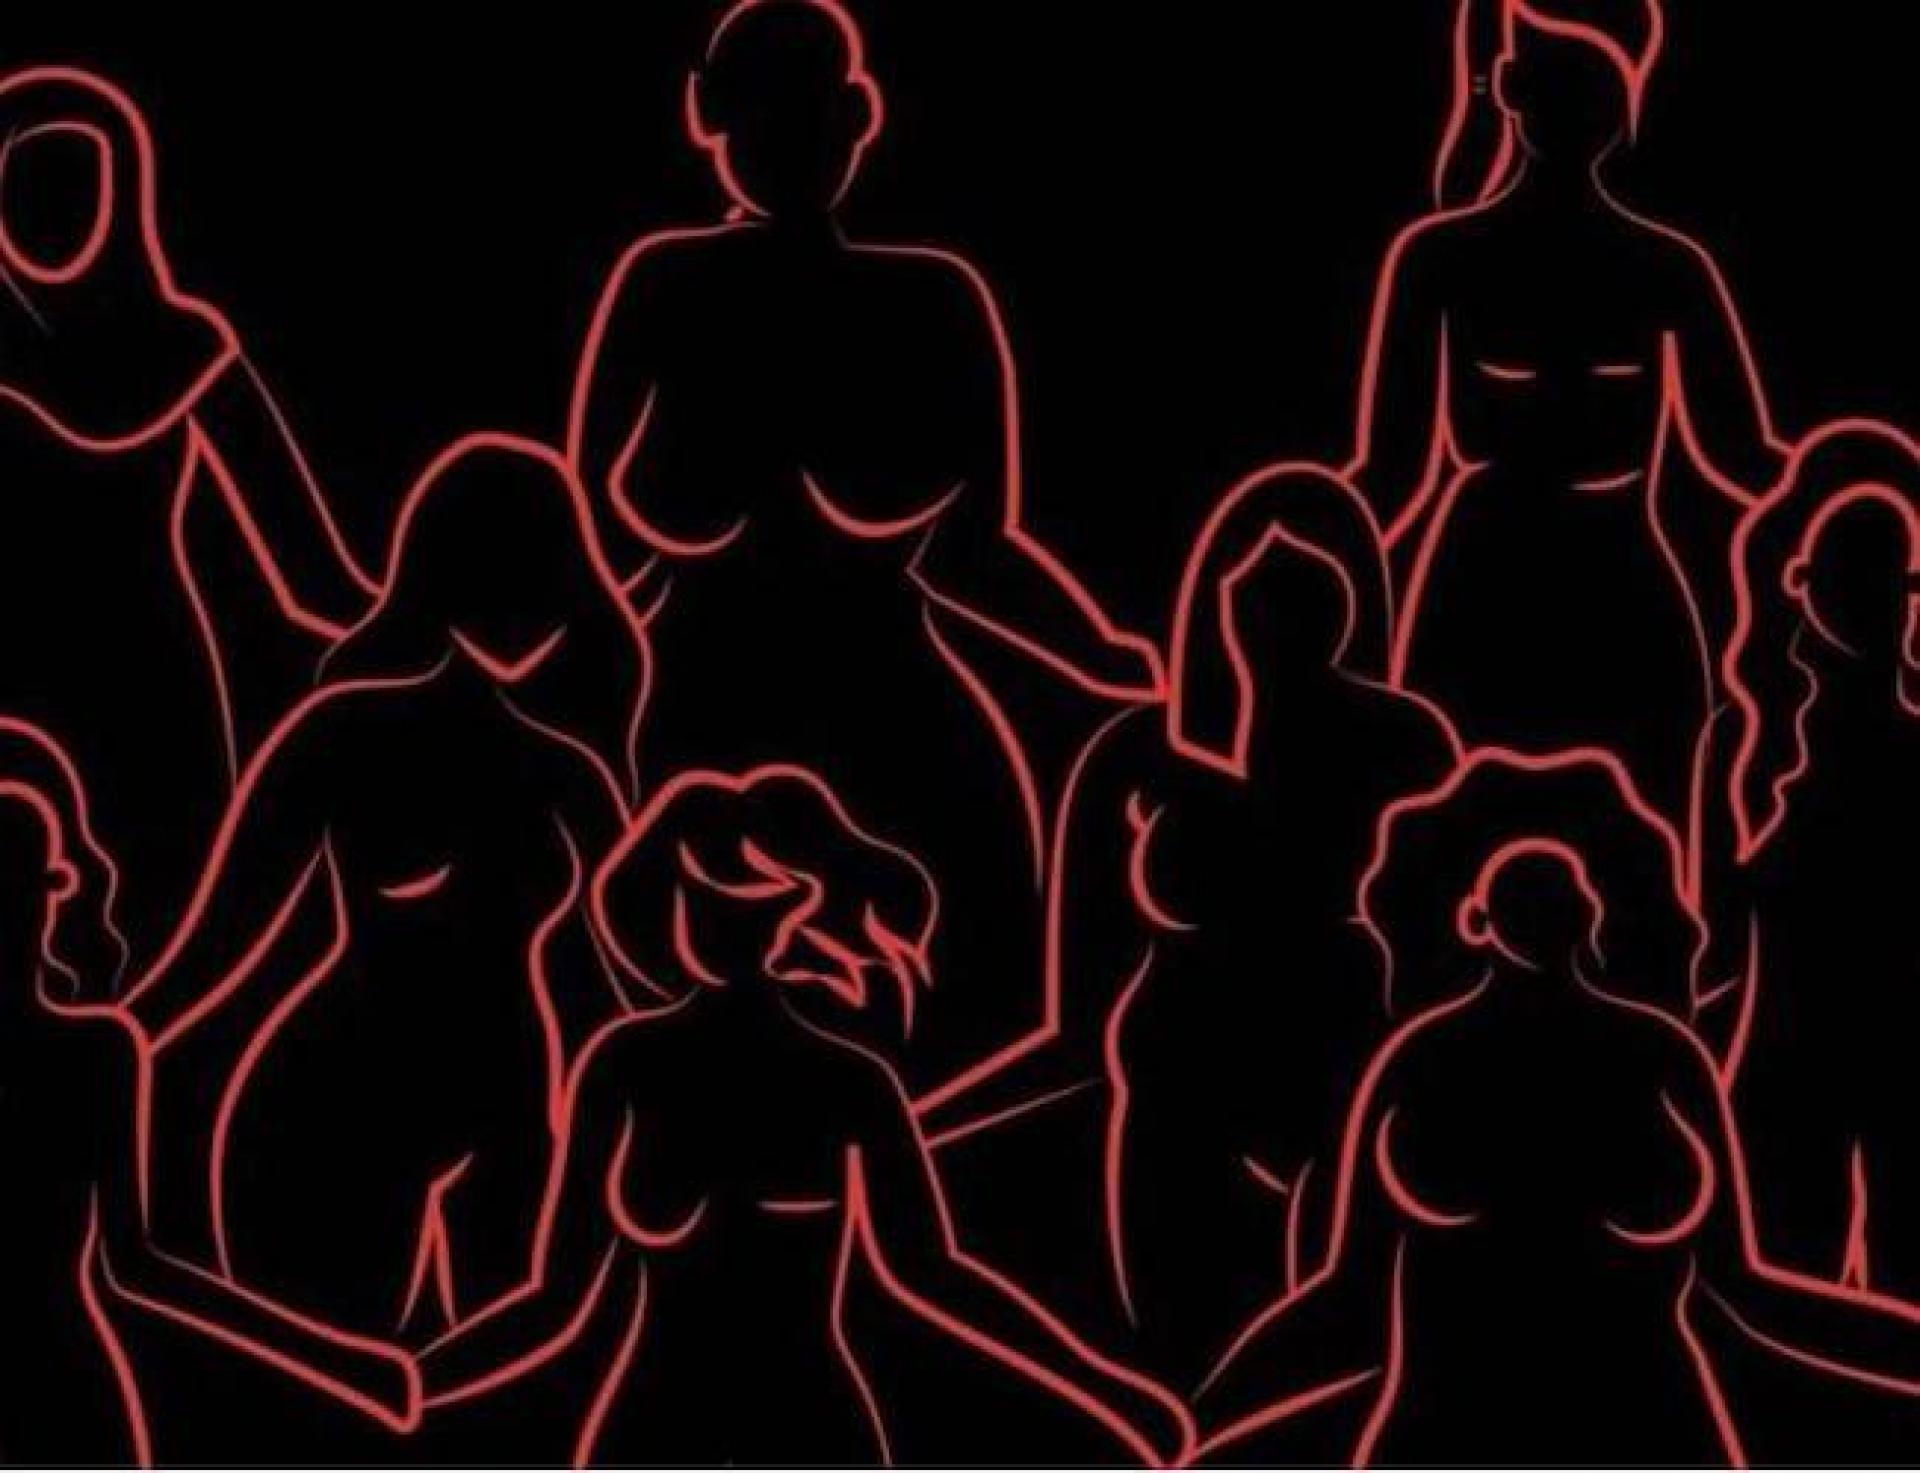 “Puta não dorme, ela cochila”: resistências para comemorar o dia internacional das trabalhadoras sexuais em 2021